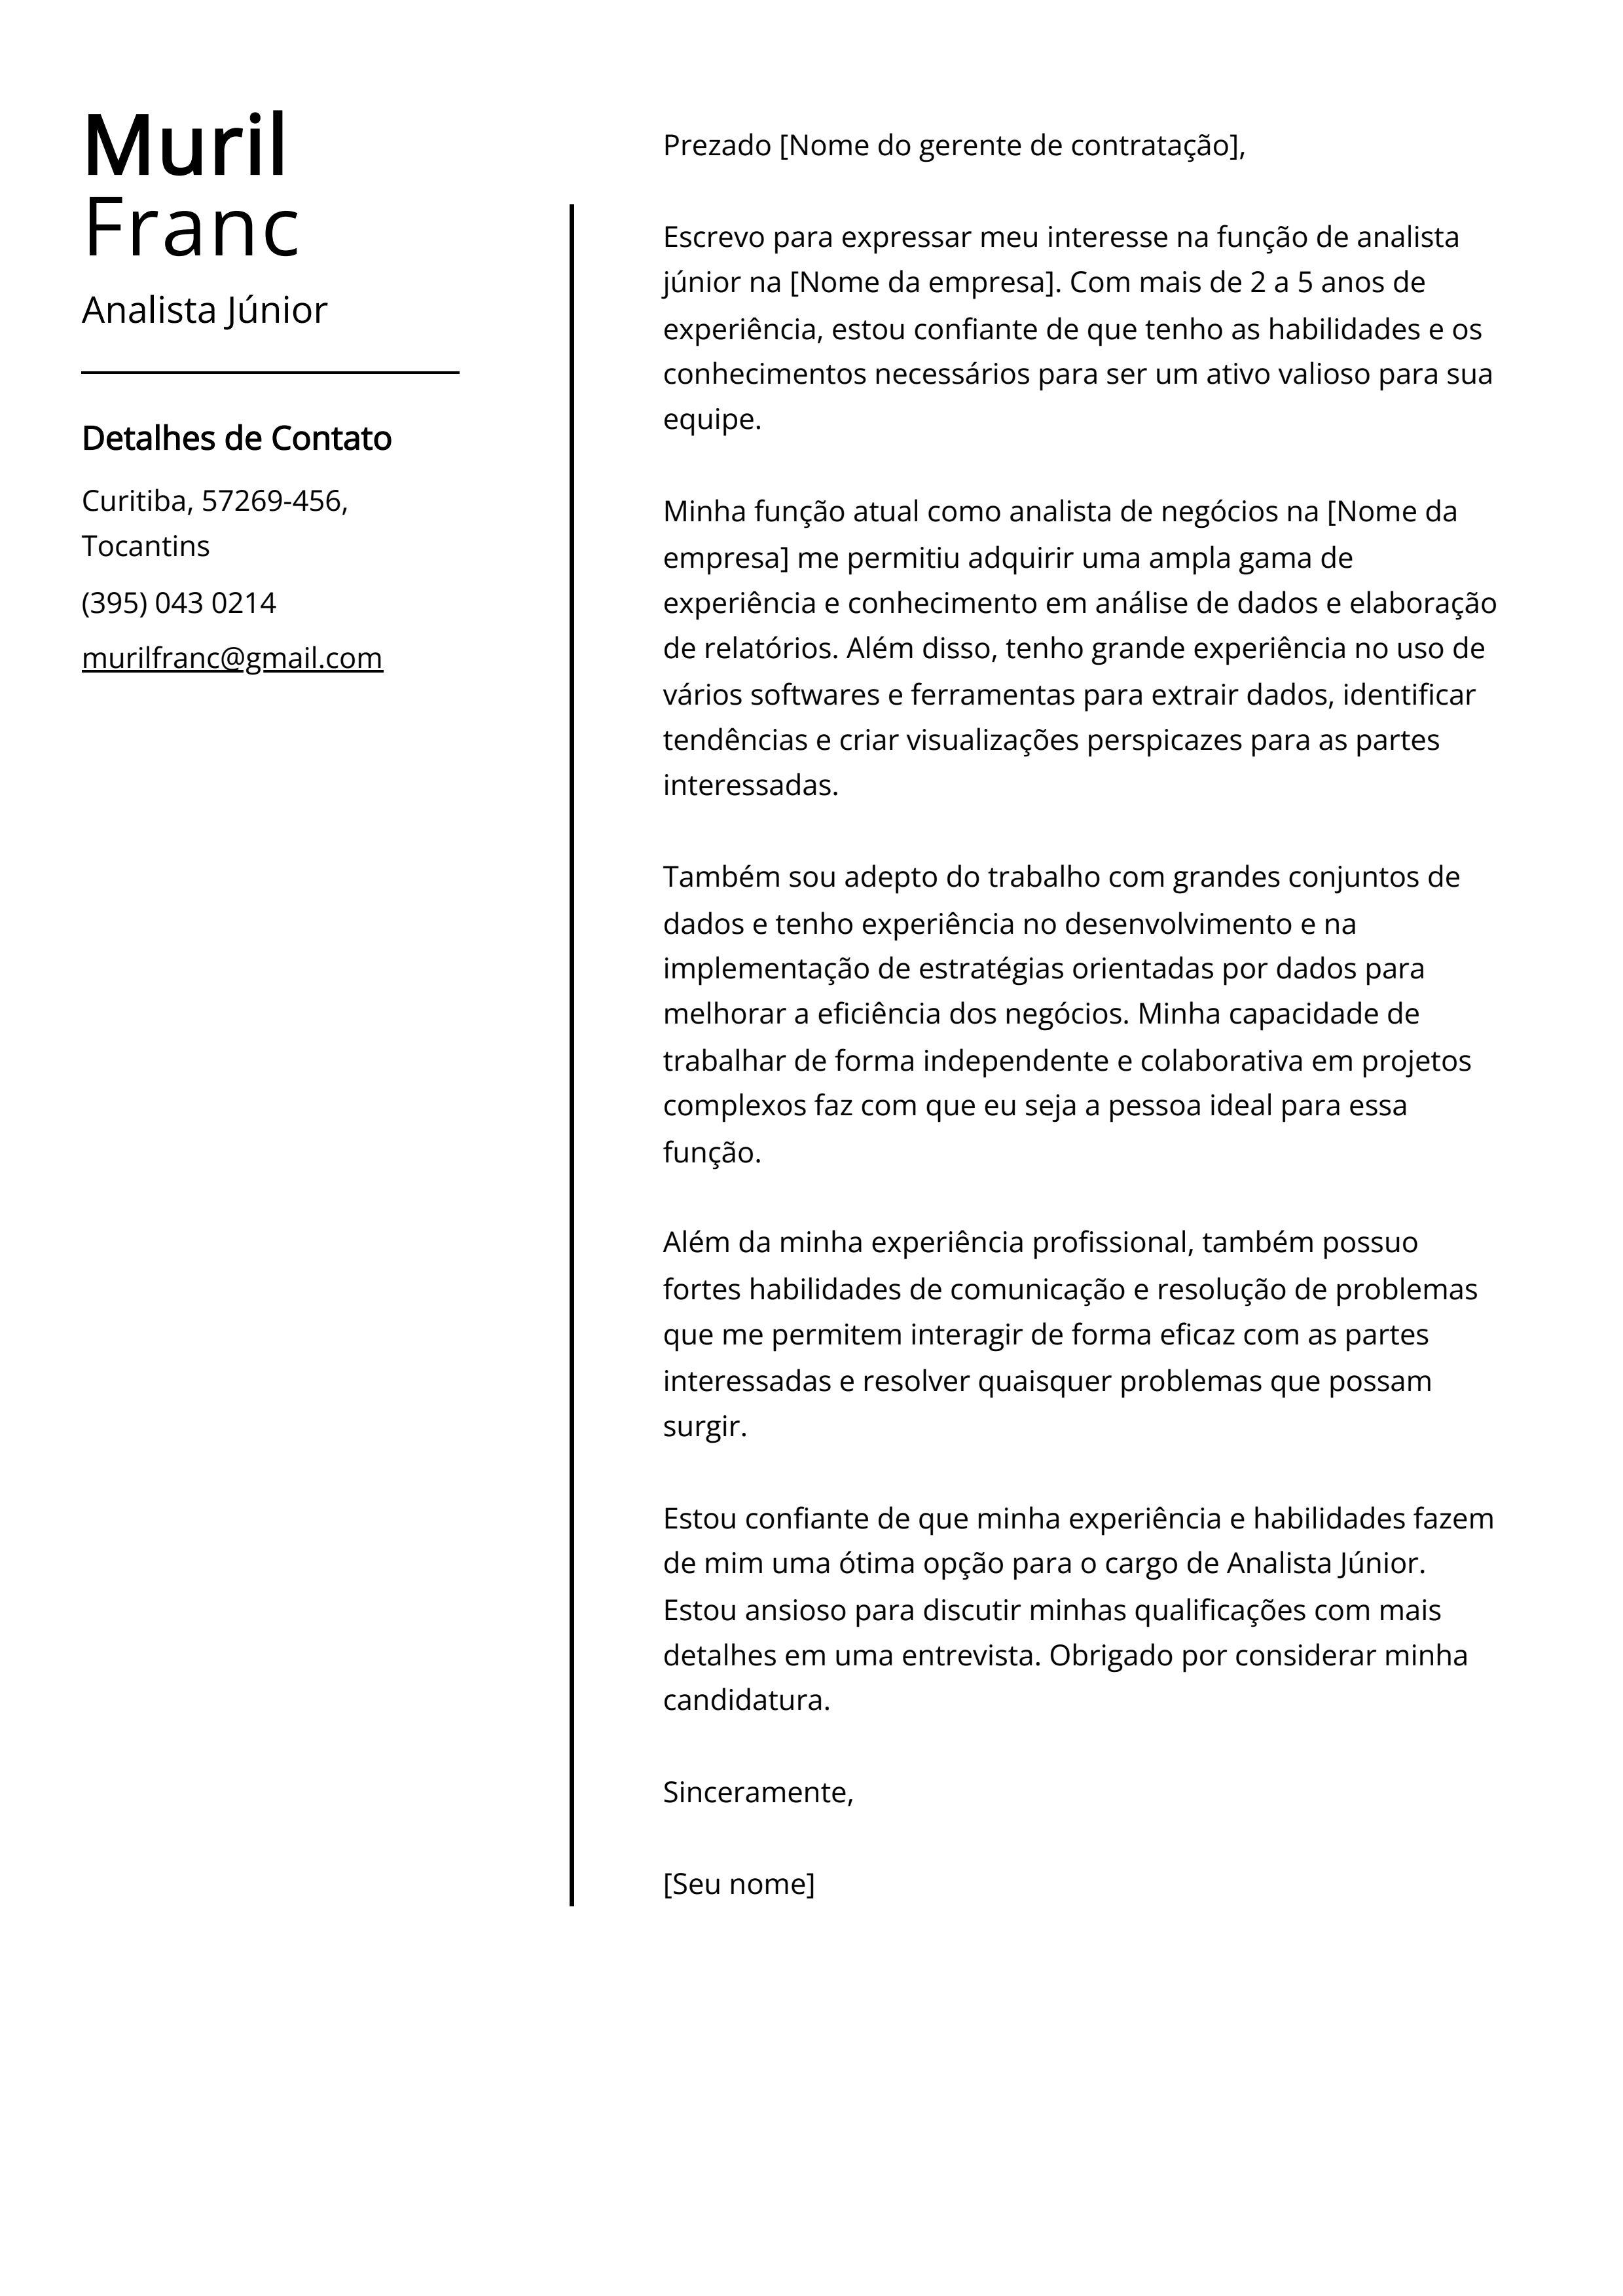 Exemplo de carta de apresentação do Analista Júnior